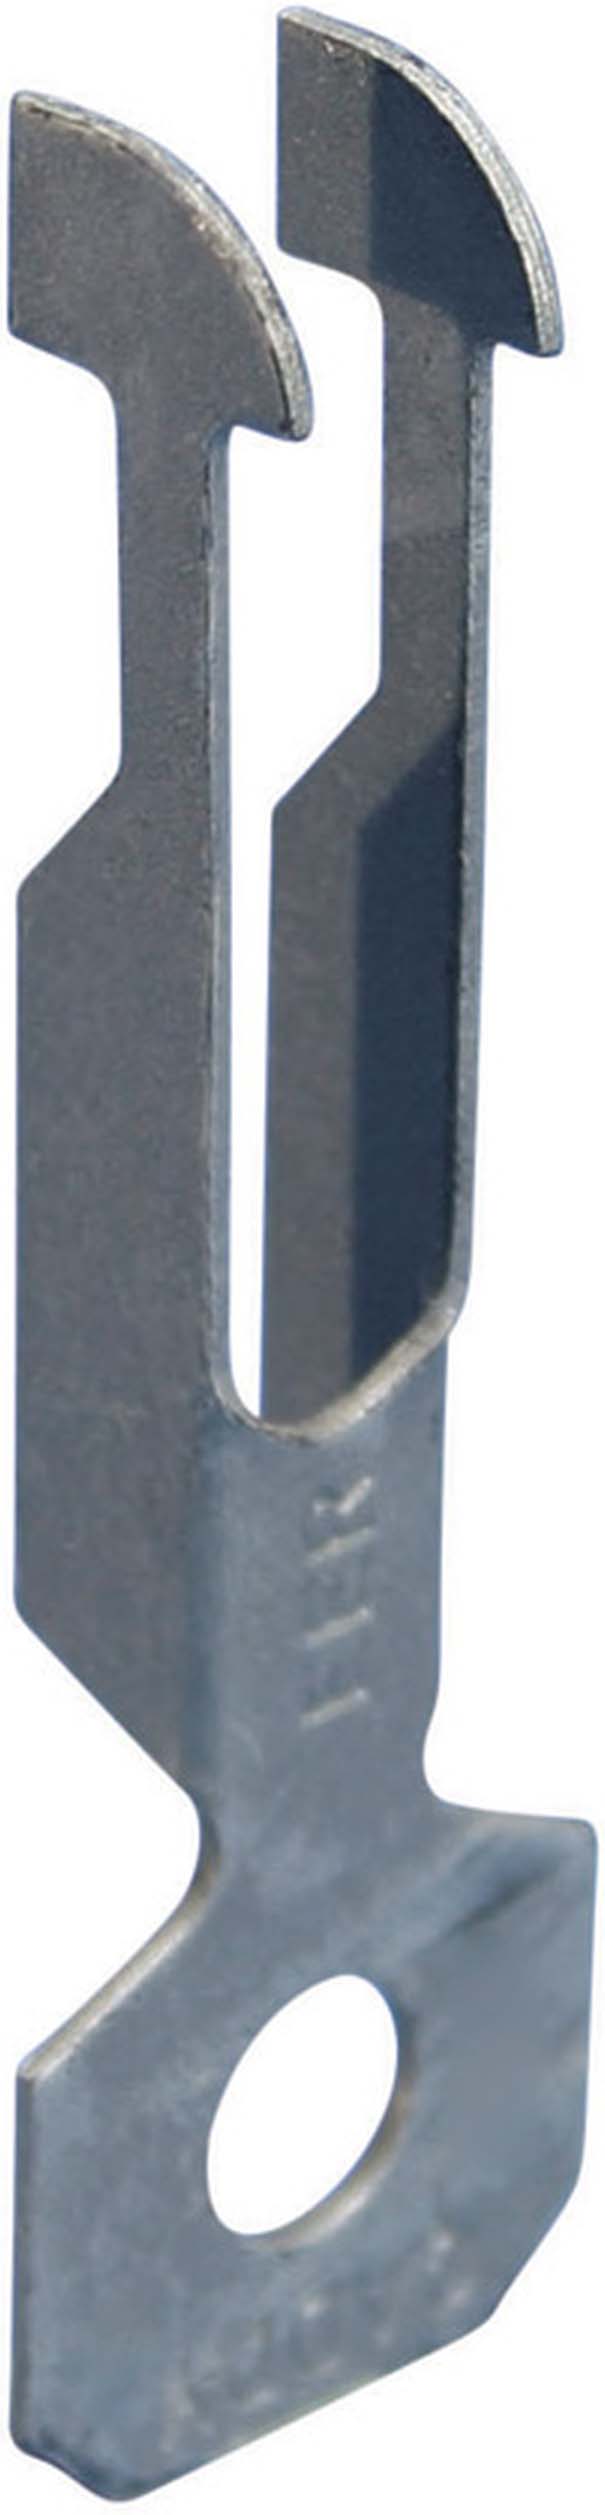 Erico Klammer P7 0,8-2mm 2-3mm EER - 171470